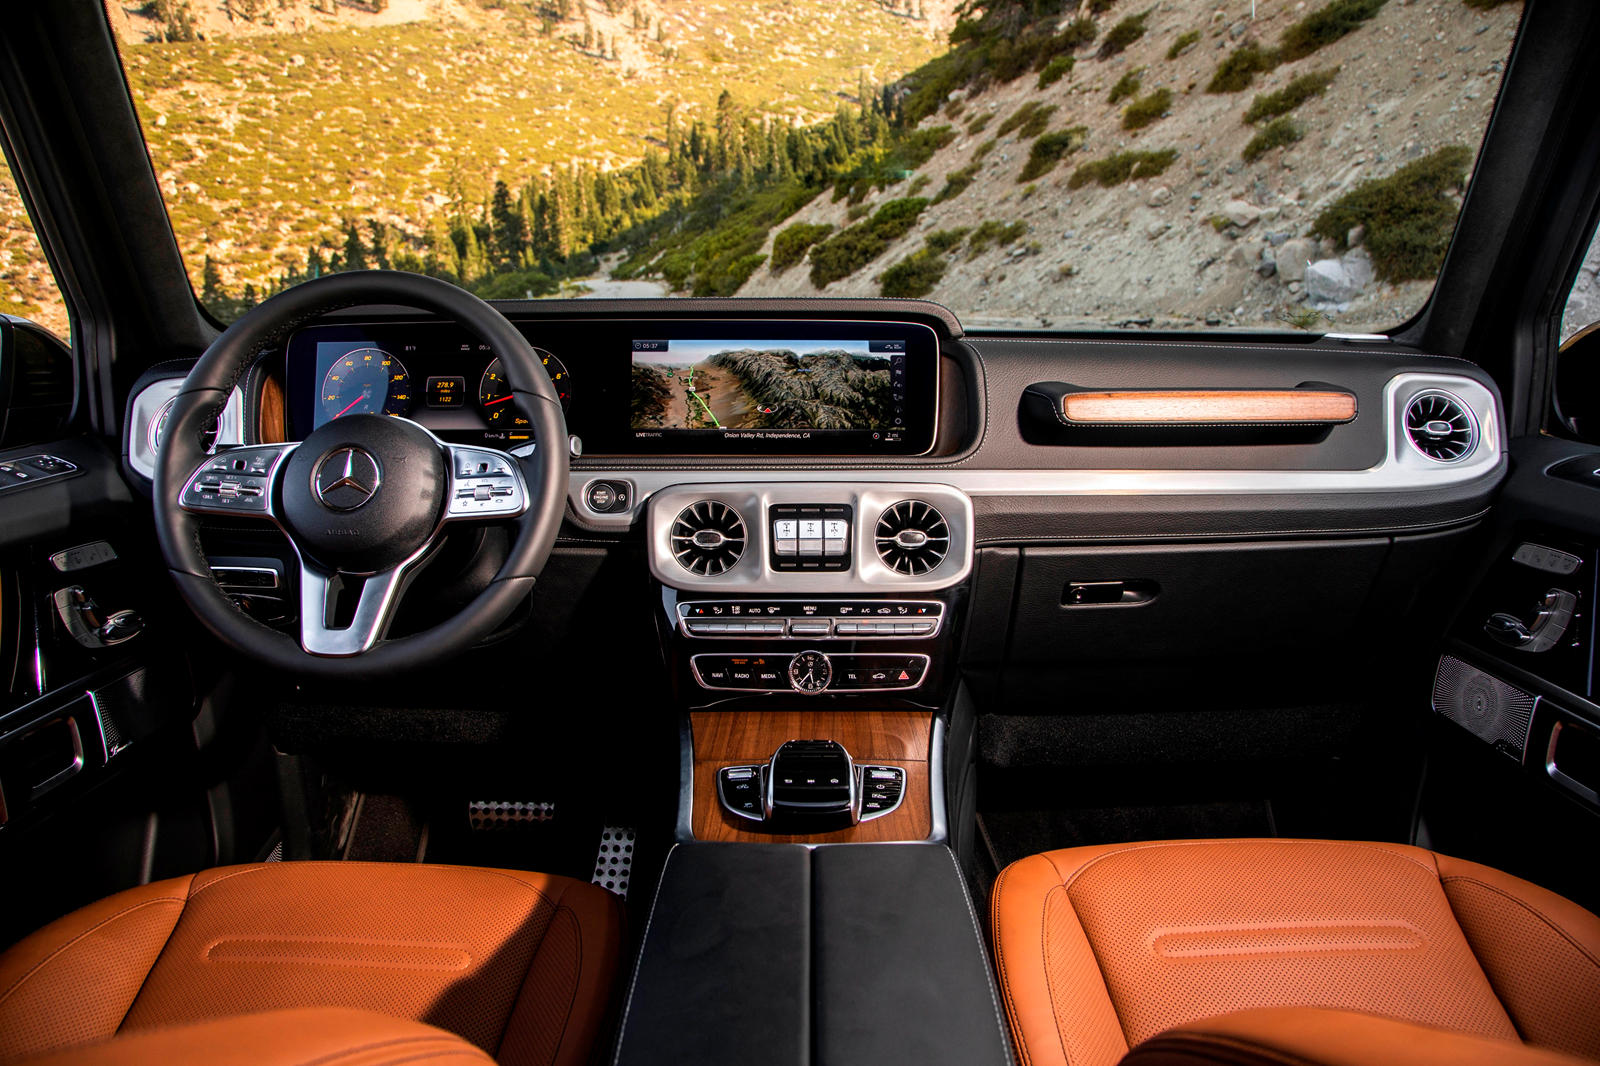 Mercedes-Benz G-Class design changes